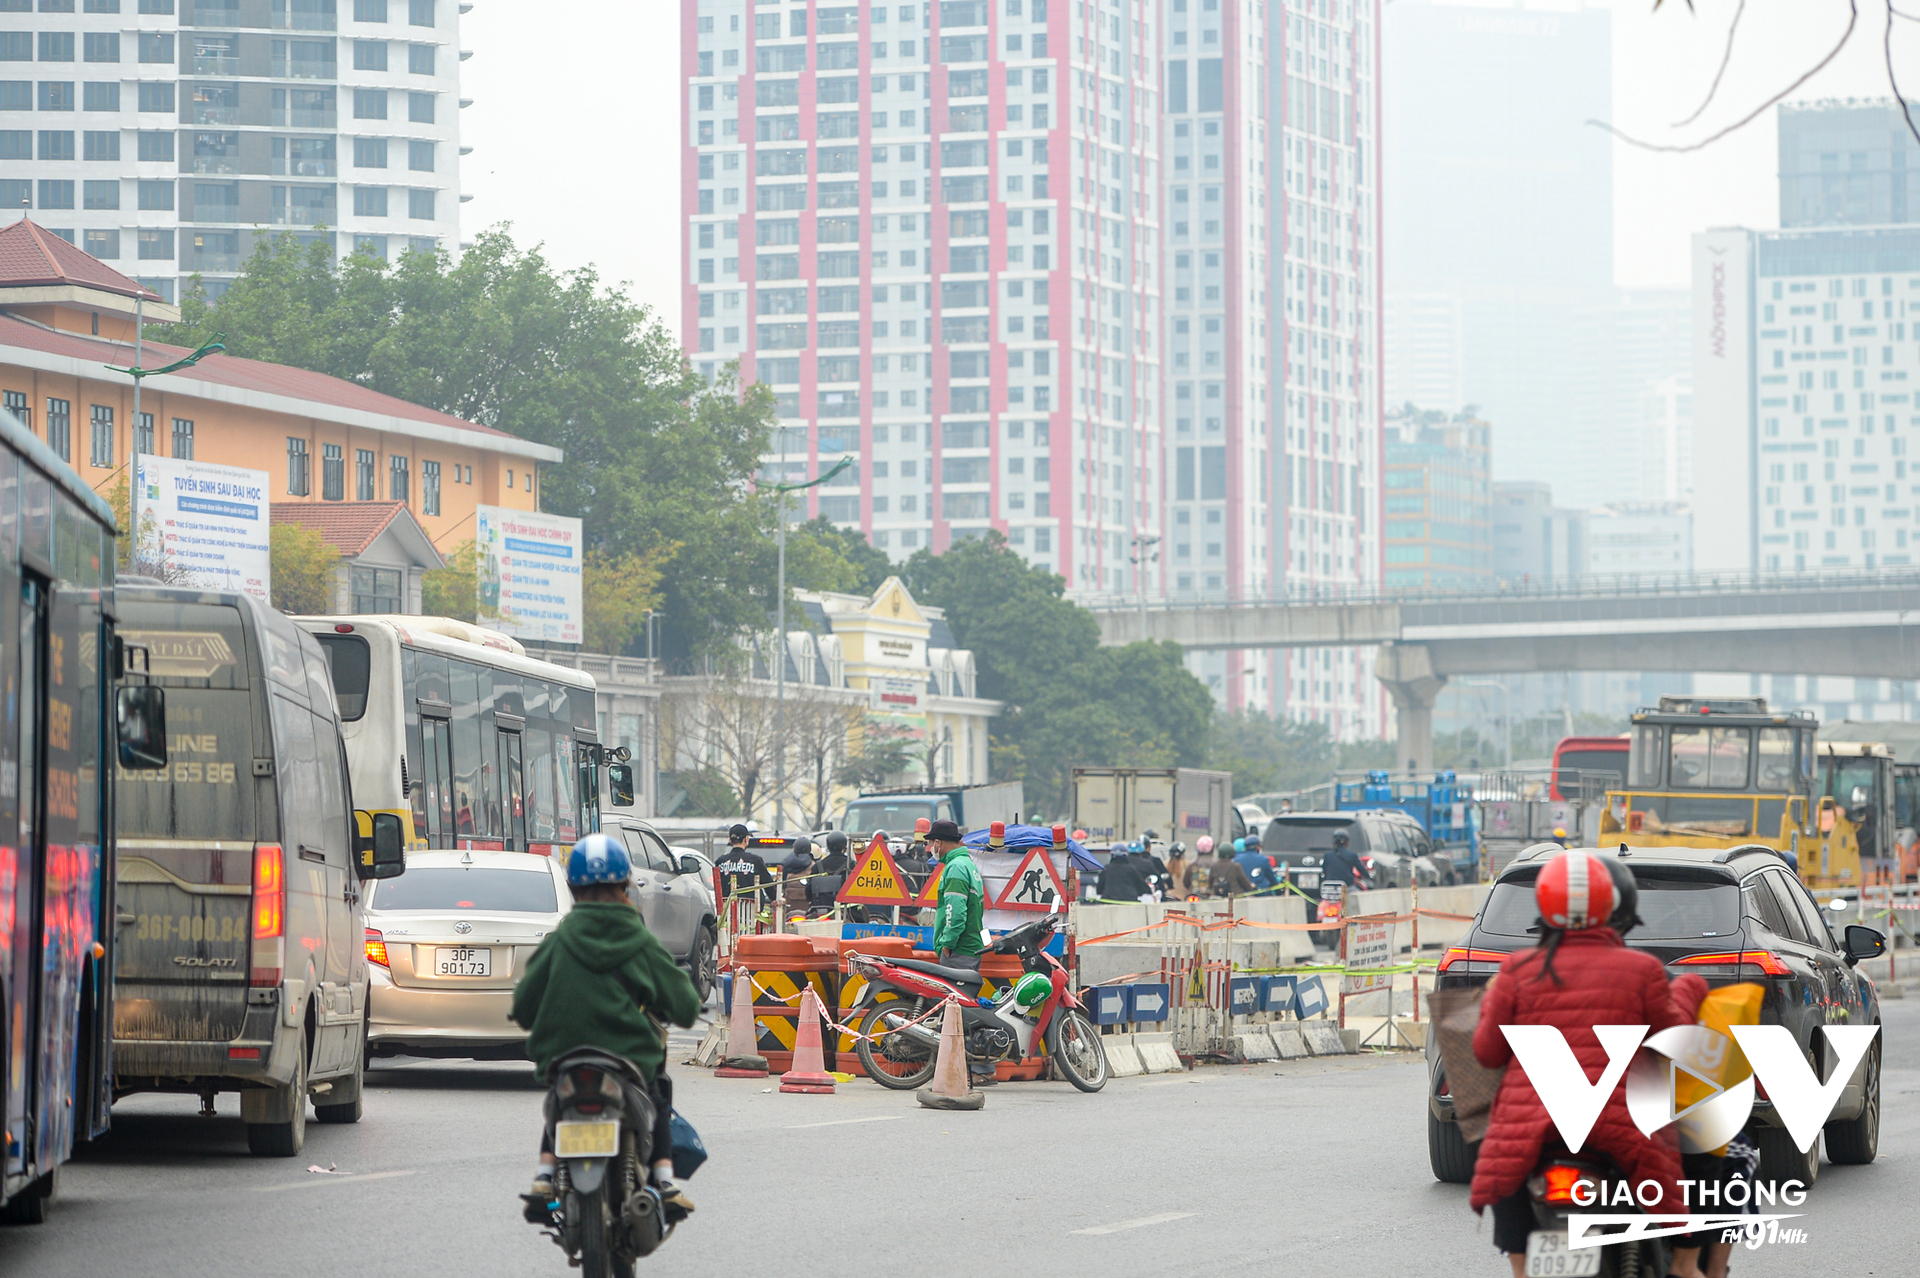 Tuy nhiên, tình hình giao thông tại nút giao Mai Dịch (quận Cầu Giấy, Hà Nội) trong quá trình cầu vượt này thi công lại rất ùn tắc.